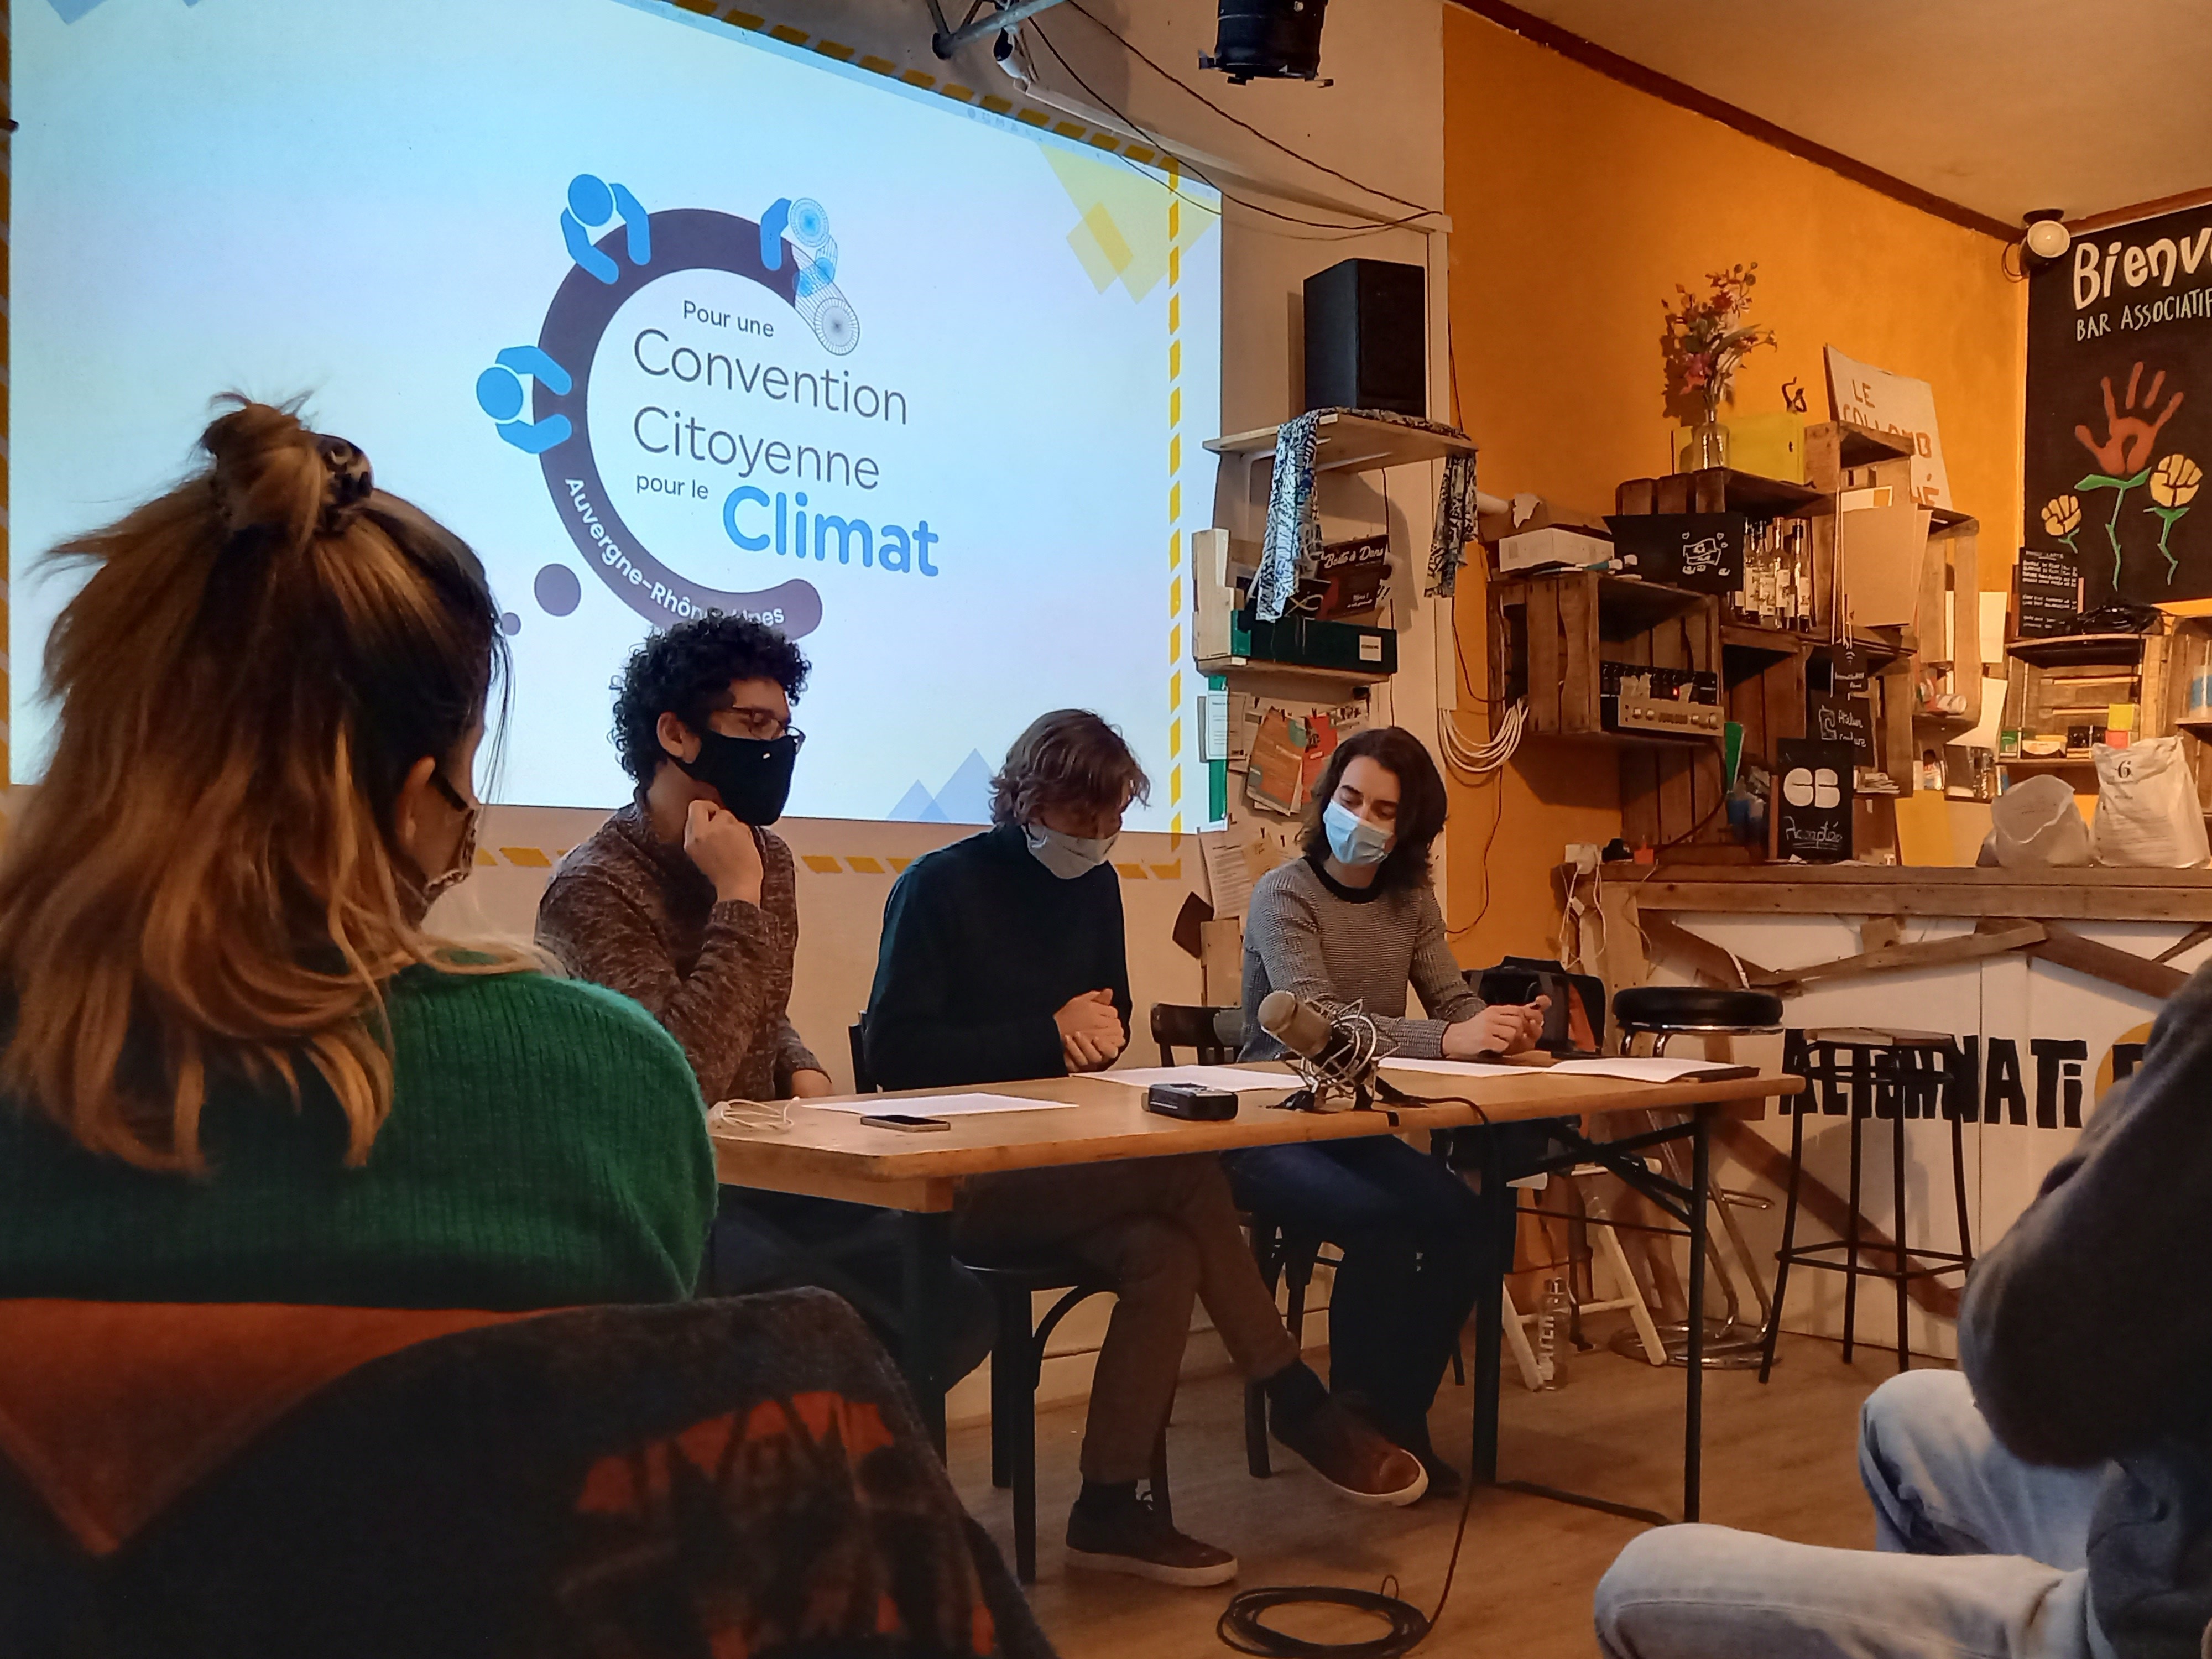 Une convention citoyenne pour le climat en Auvergne Rhône-Alpes